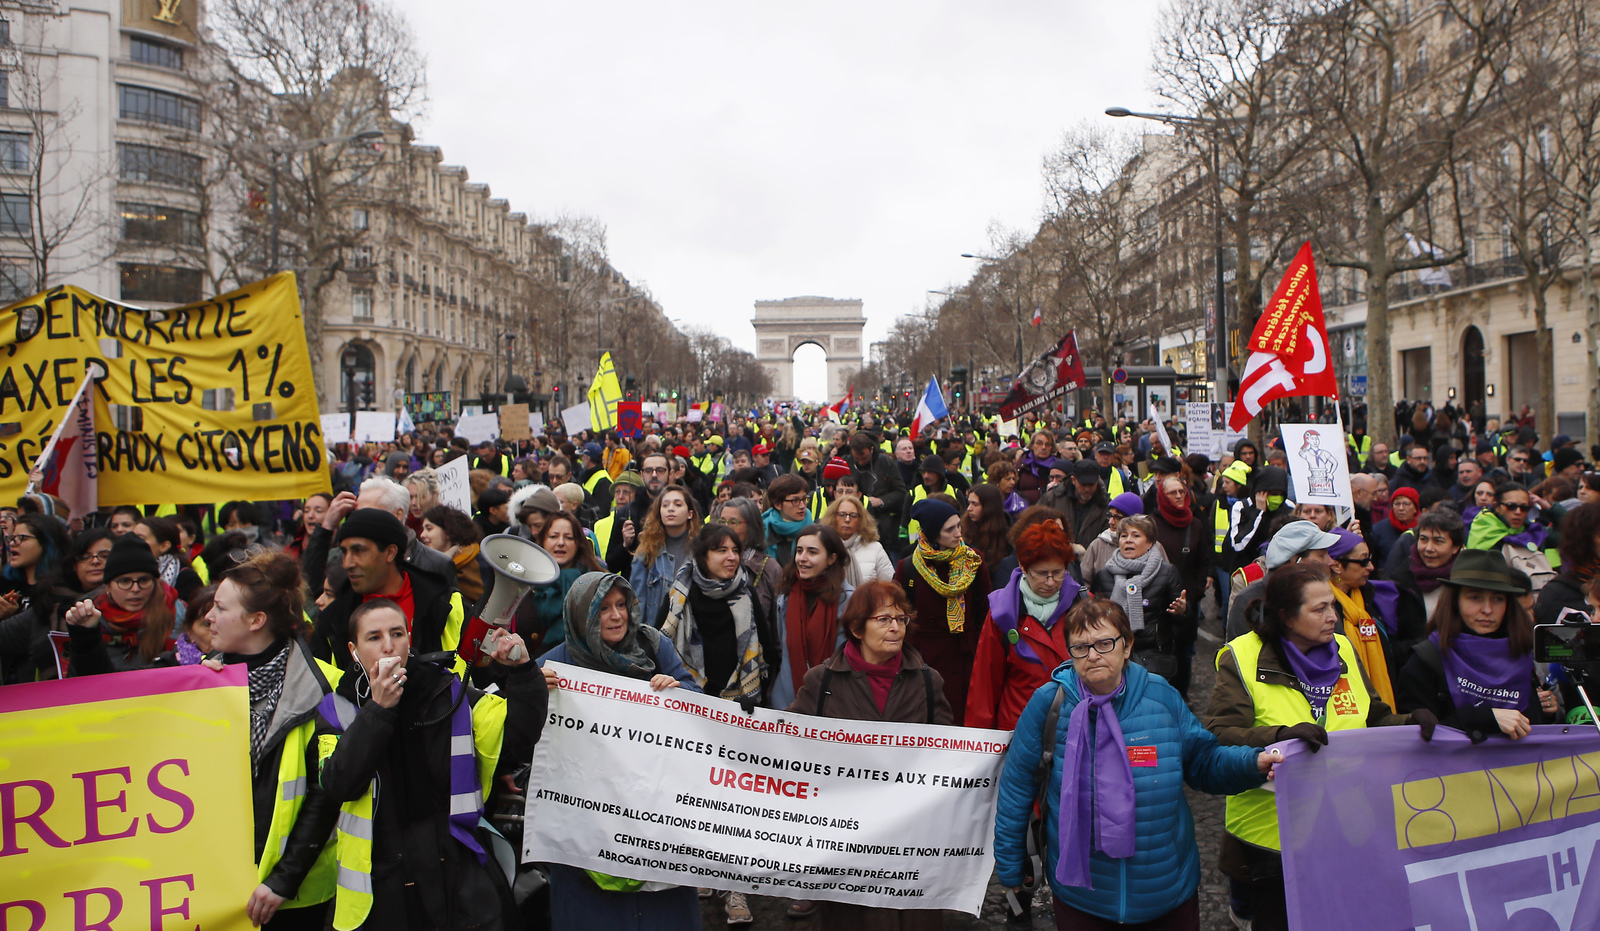 Manifestantes chalecos amarillos marcharon por las calles de París y otras ciudades de Francia por 17mo fin de semana consecutivo.